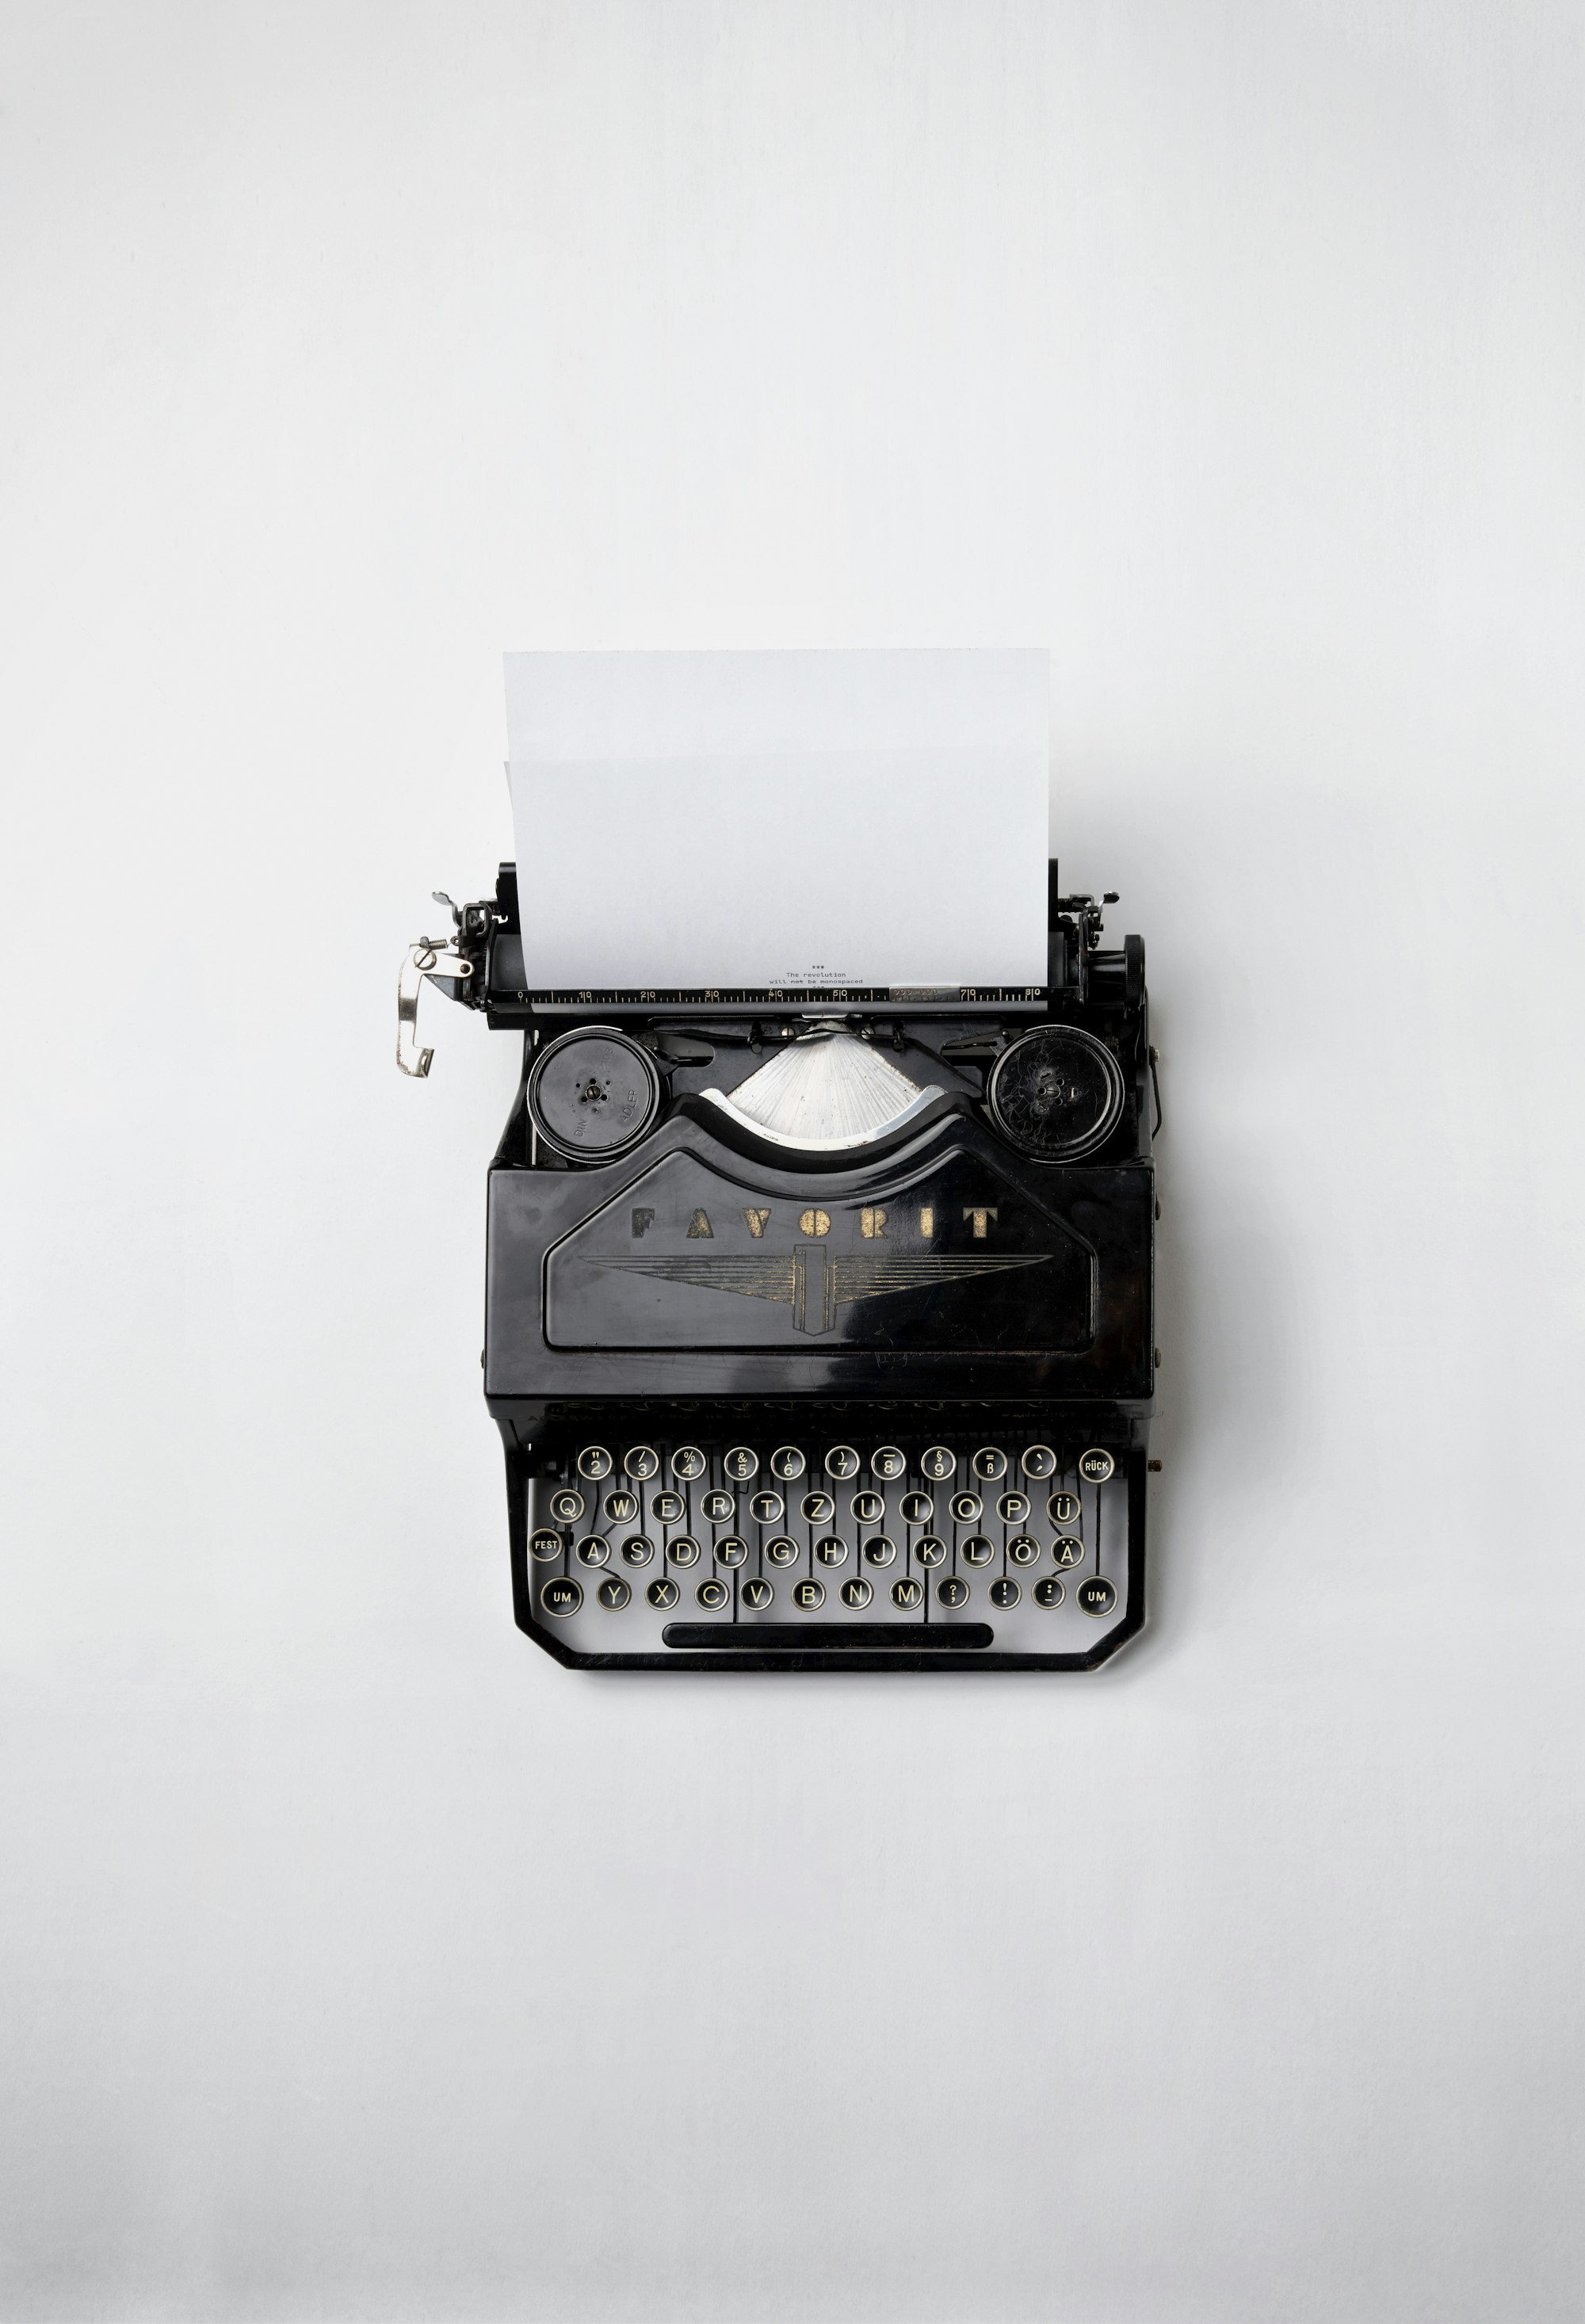 Typewriter on white surface